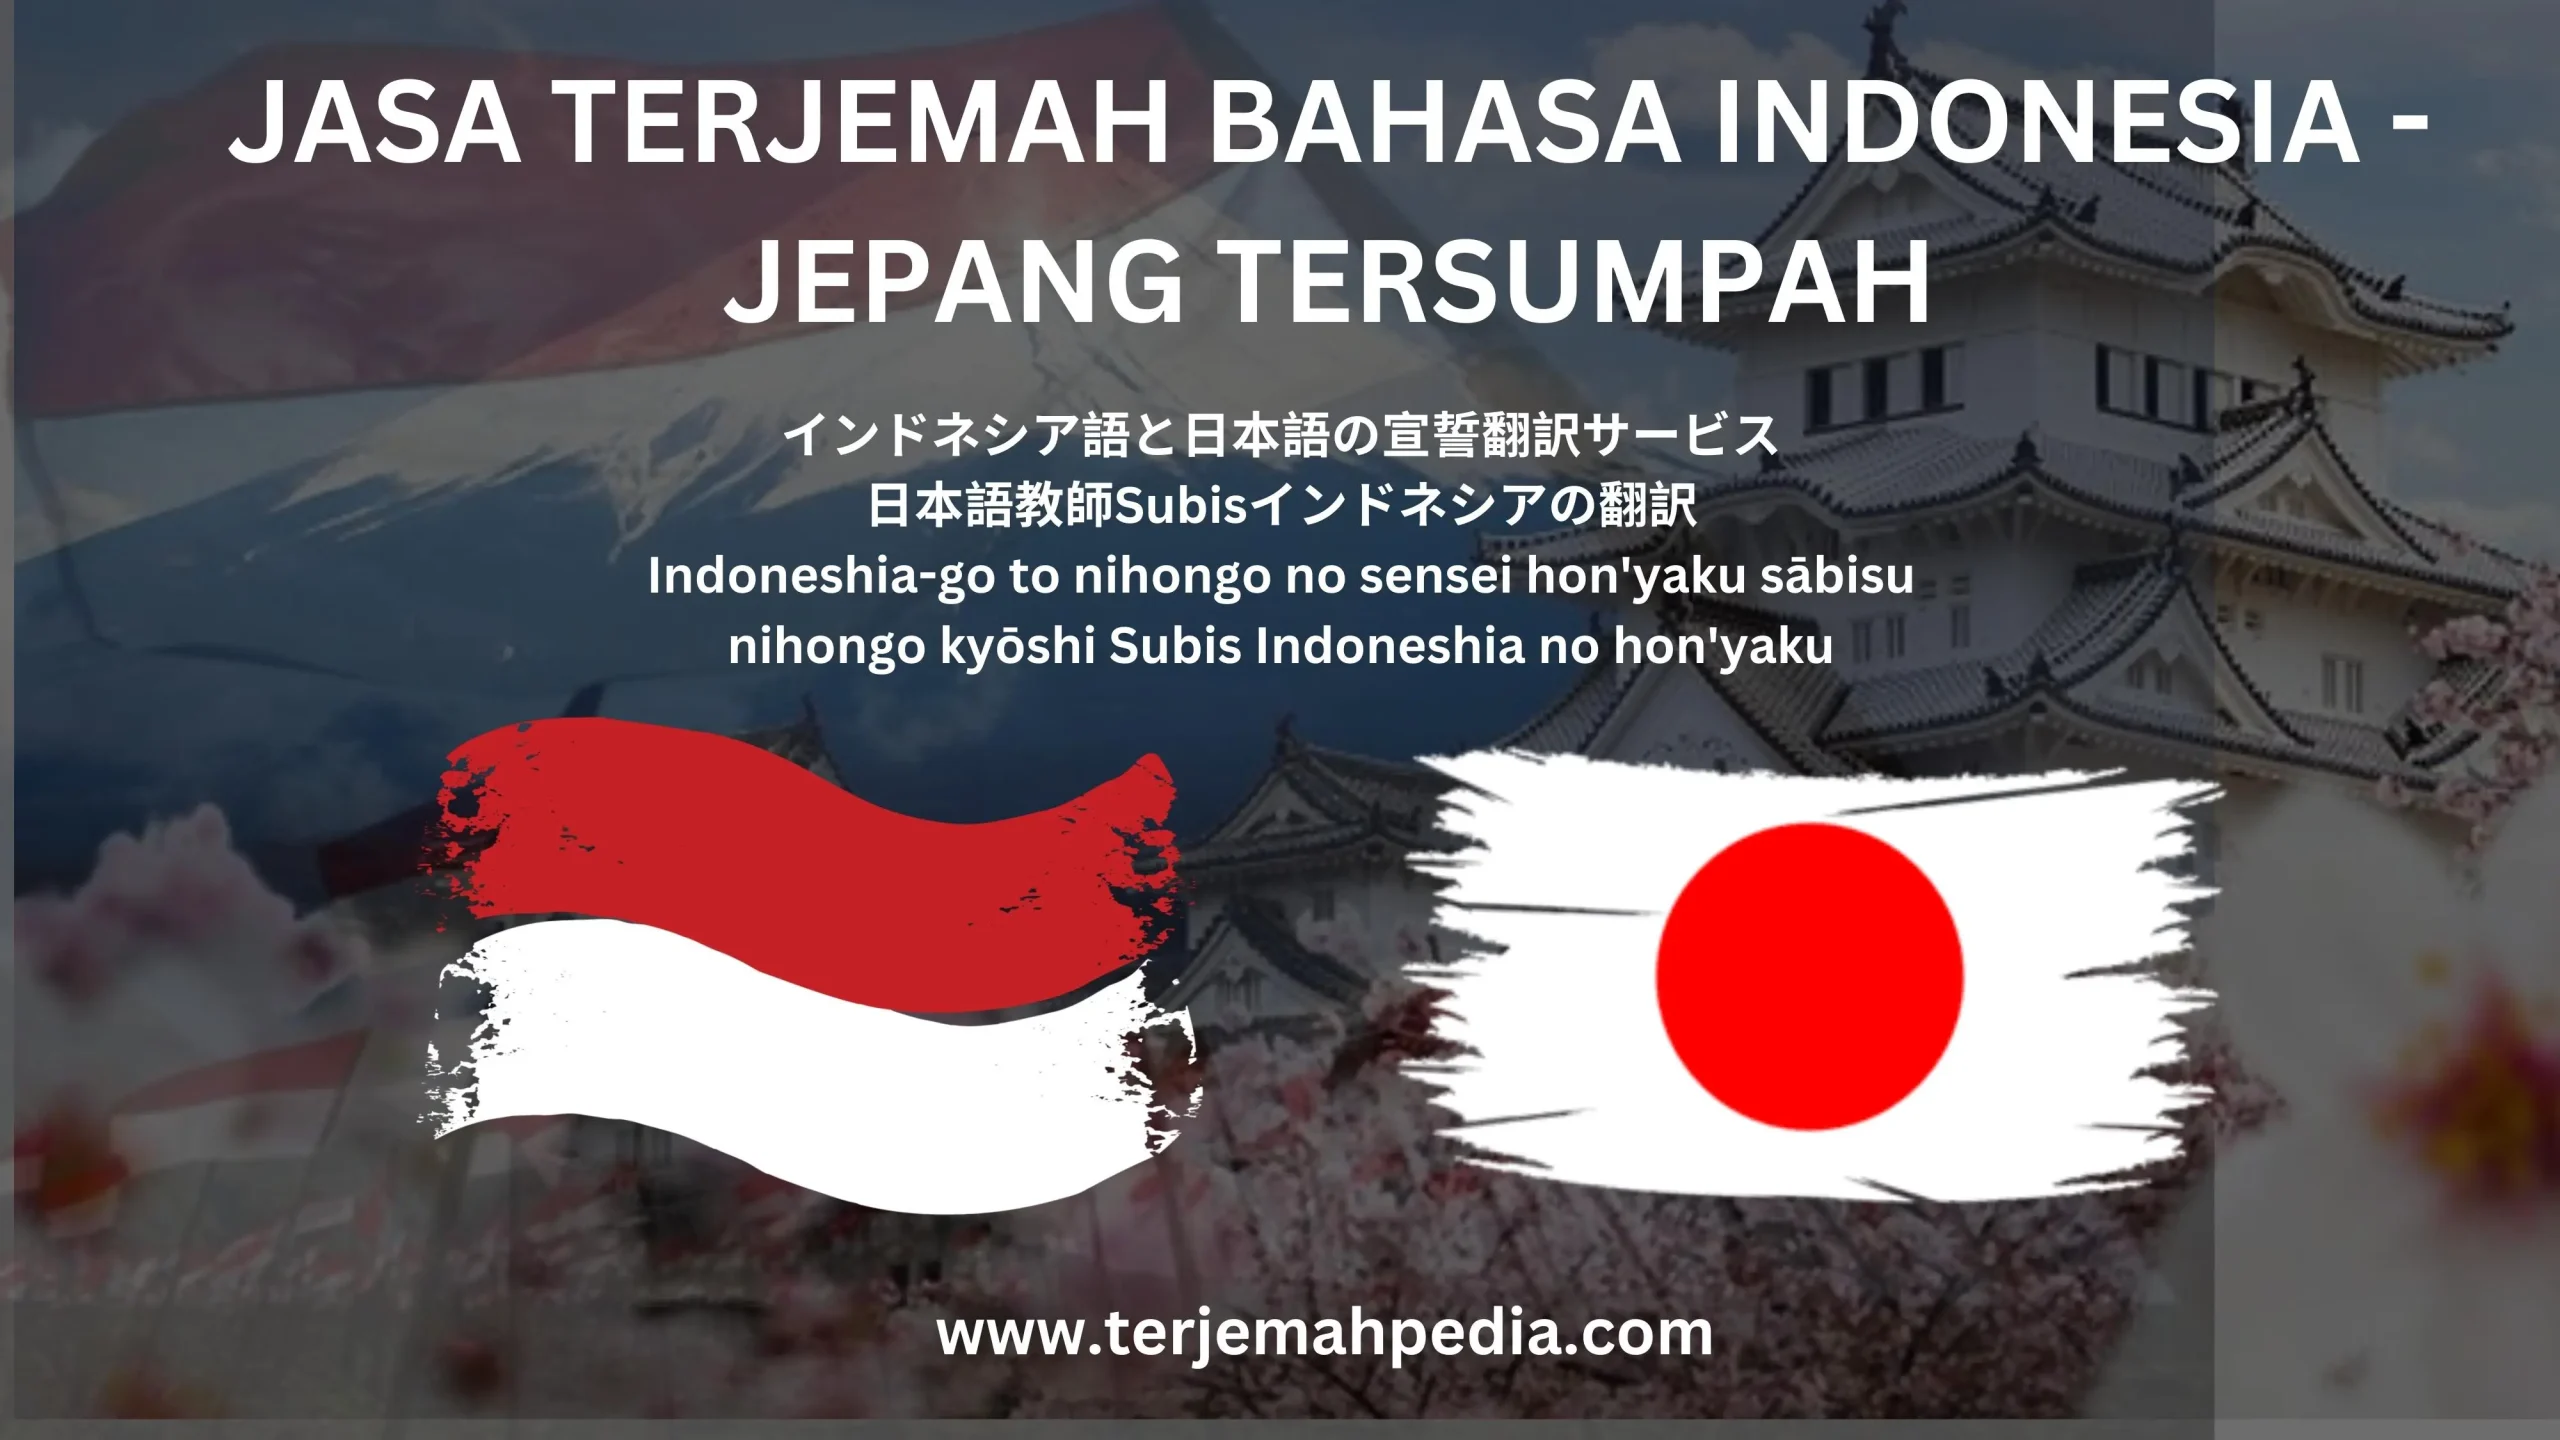 Mengenal Jasa Terjemah Bahasa Indonesia-Jepang Tersumpah